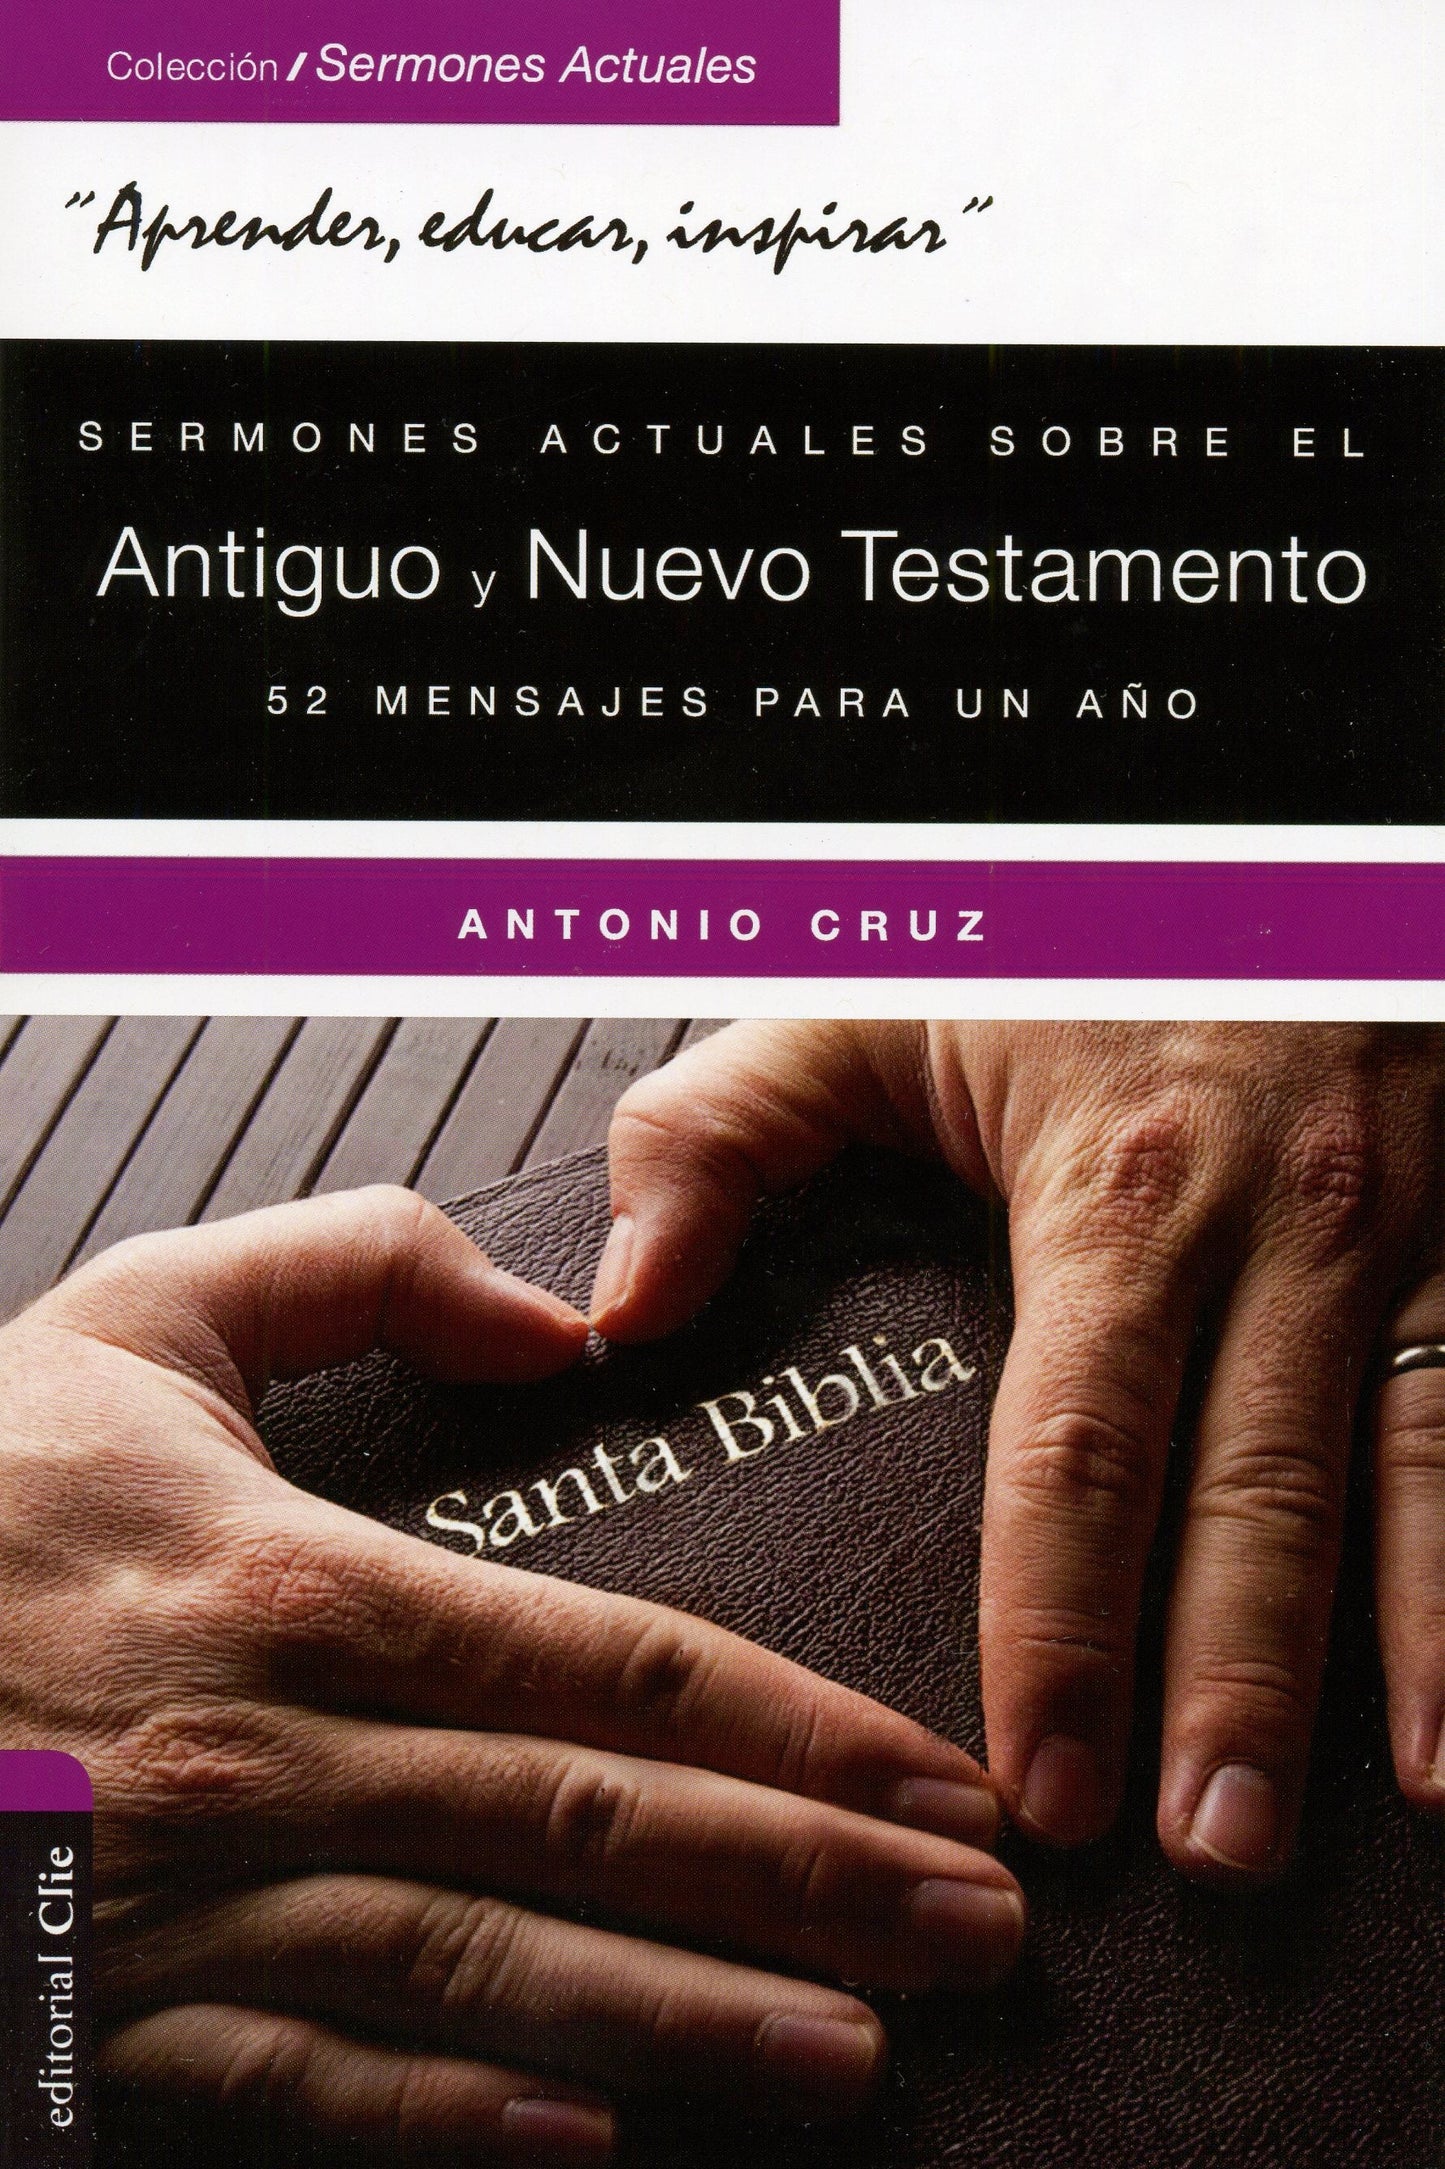 Sermones actuales sobre el Antiguo y el Nuevo Testamento